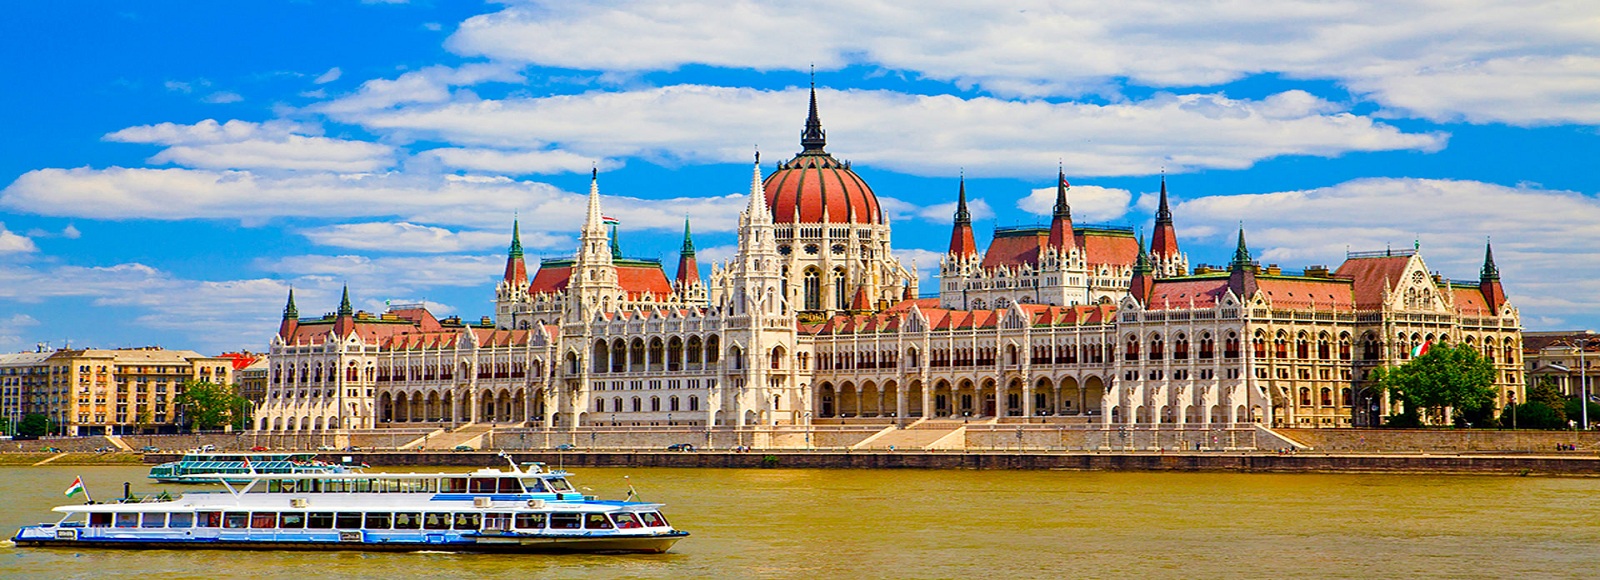 Ofertas de Traslados en Budapest. Traslados económicos en Budapest 